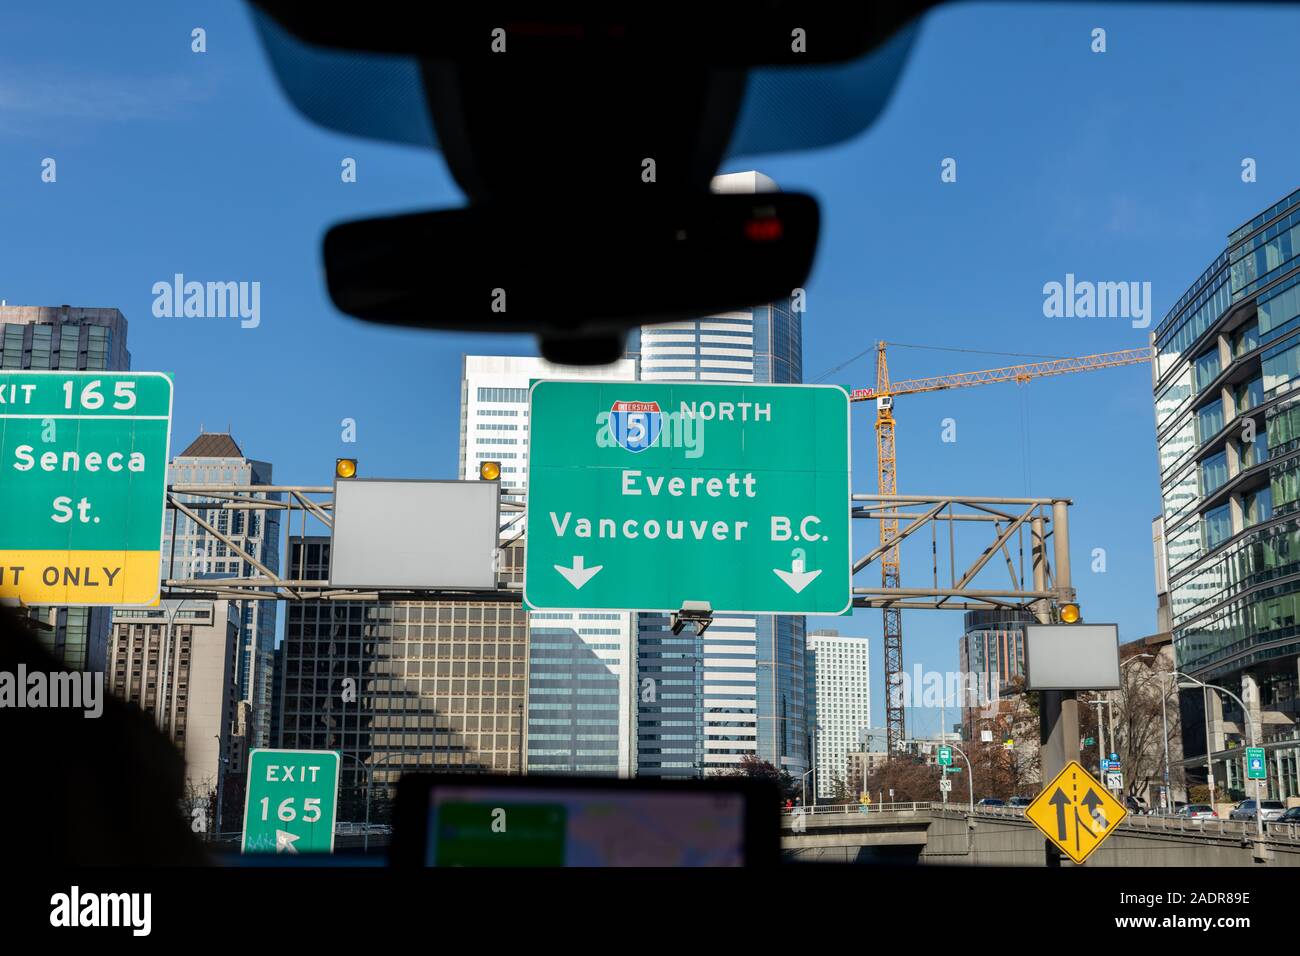 Seattle, Washington - 27 nov., 2019 : pancarte aller à Vancouver vue depuis la route de Seattle en voiture Banque D'Images